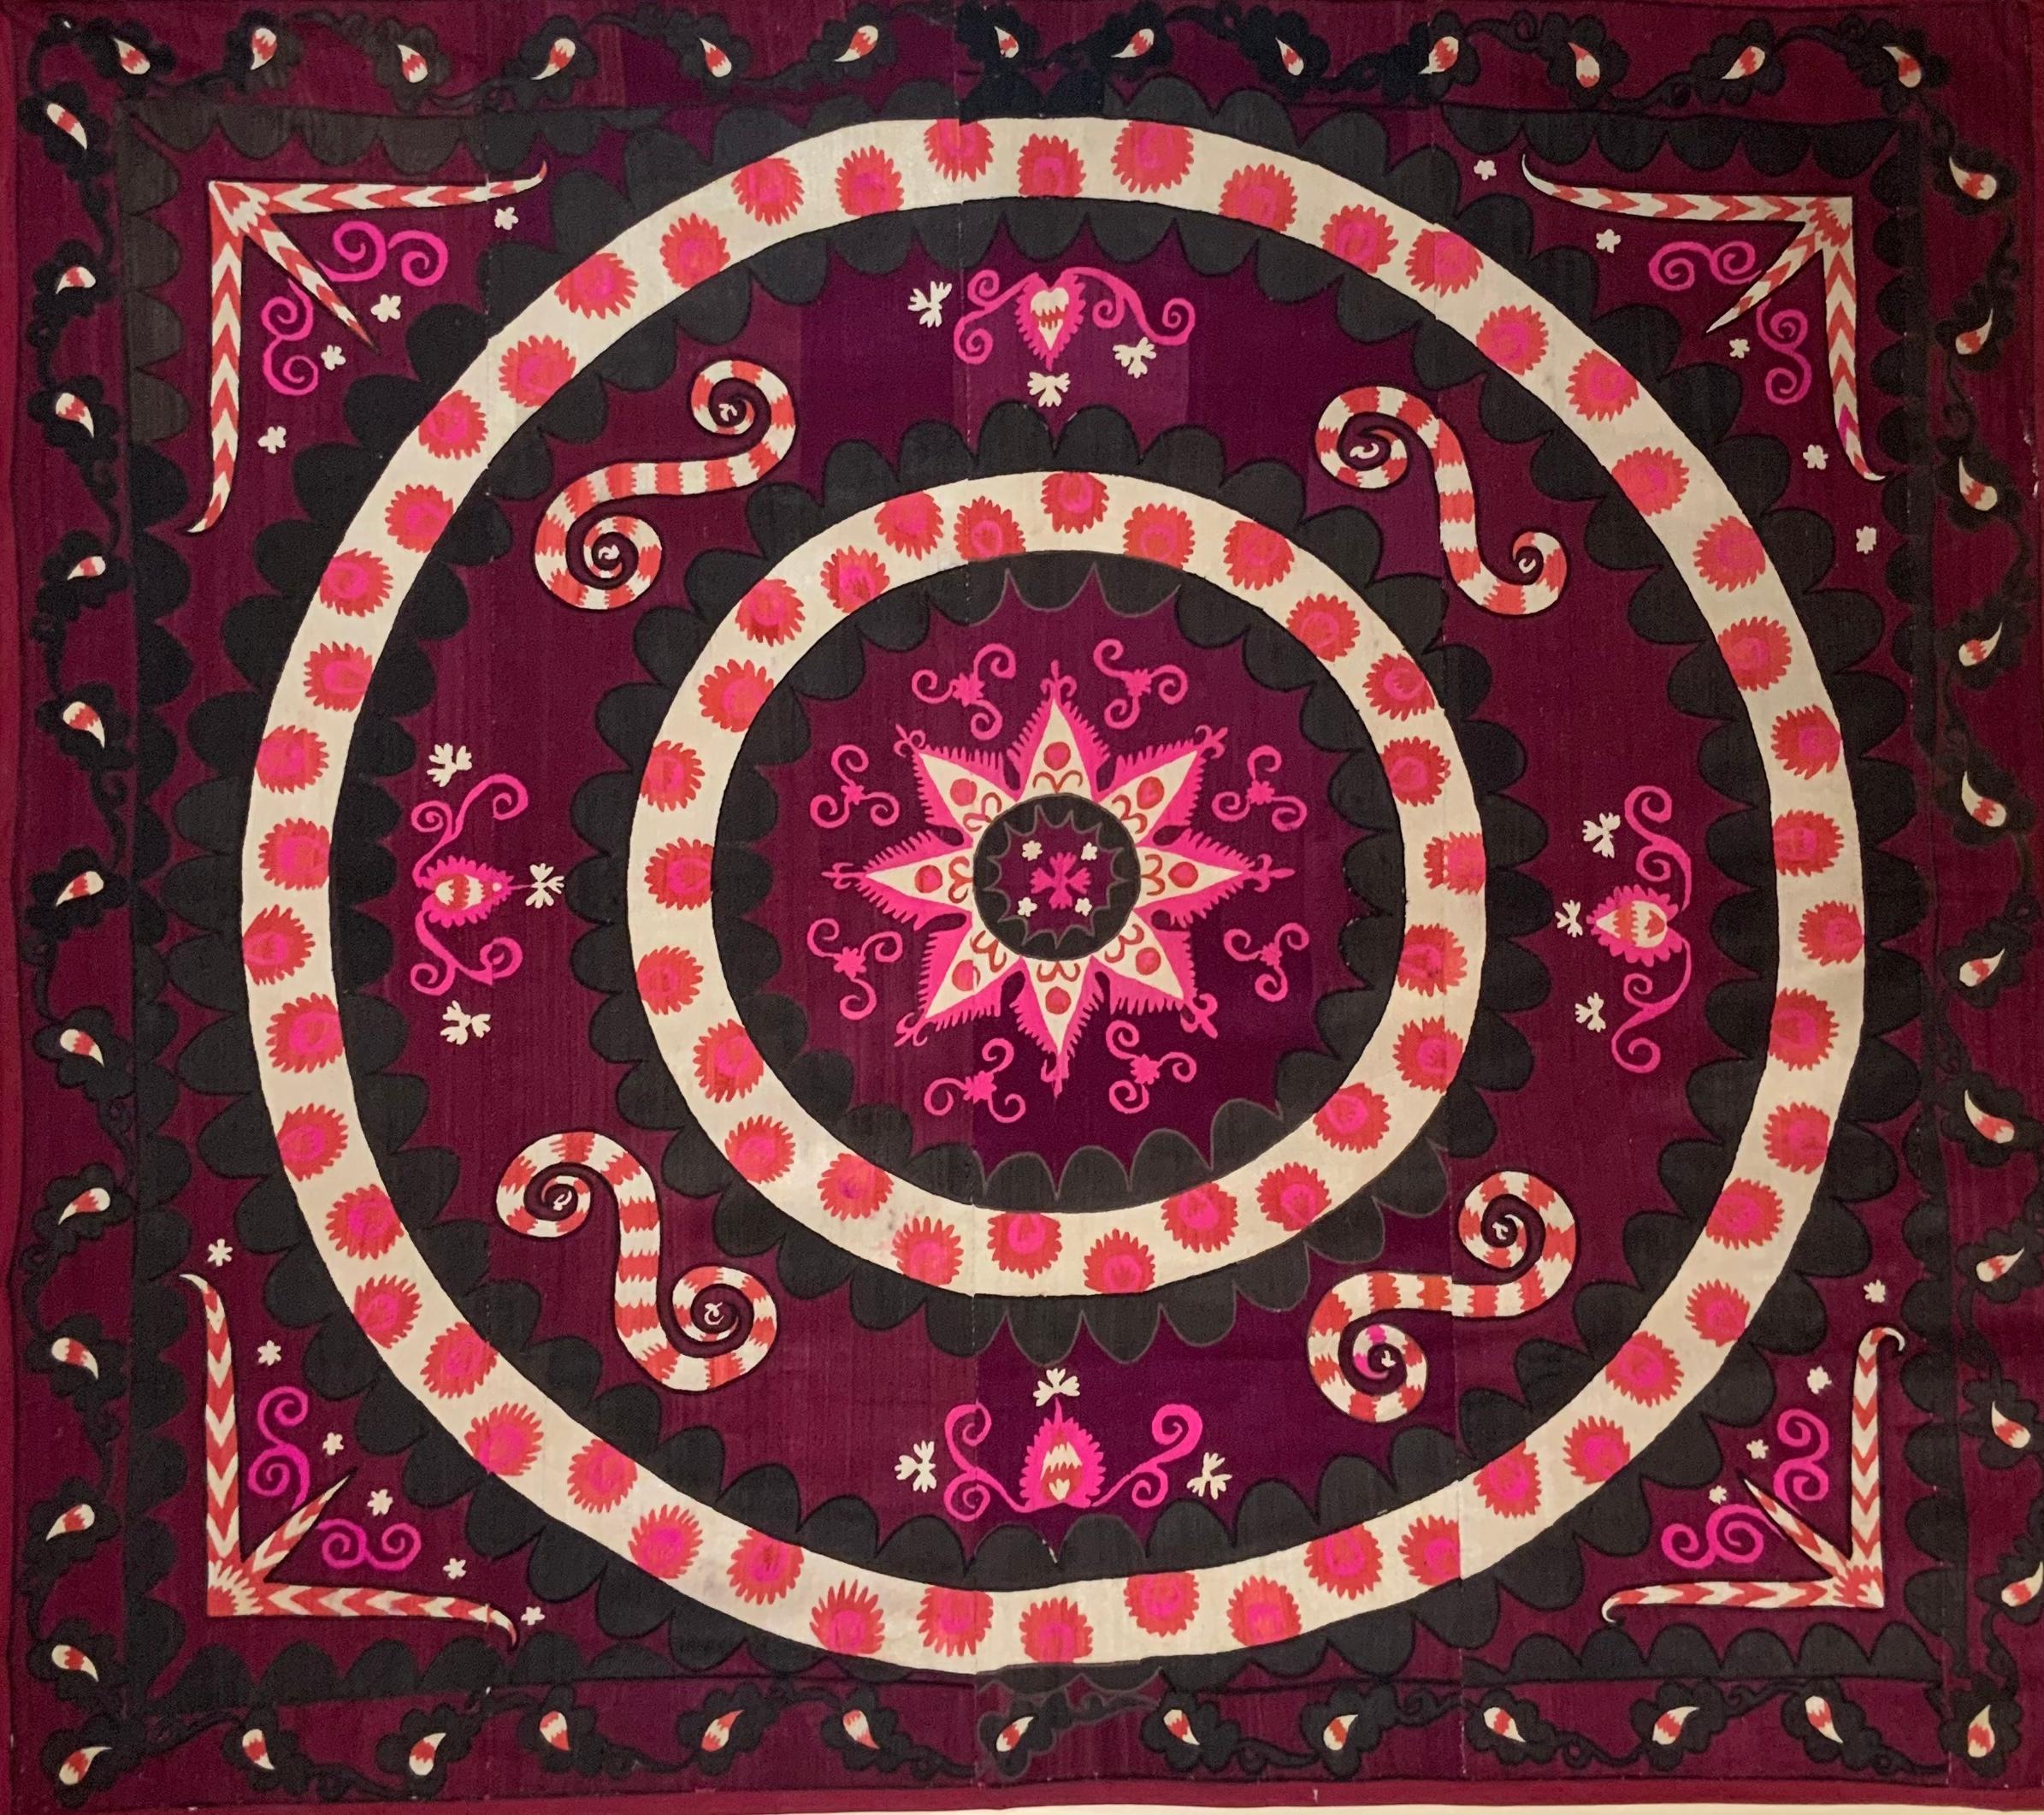 Magnifique textile artisanal Suzani en soie brodée à la main, de motifs floraux et de vignes avec anneau de cercle de vie. Ce Suzani est très spécial parce qu'il est brodé sur toute sa surface, il n'y a pas d'espace vide, ce qui montre le temps et